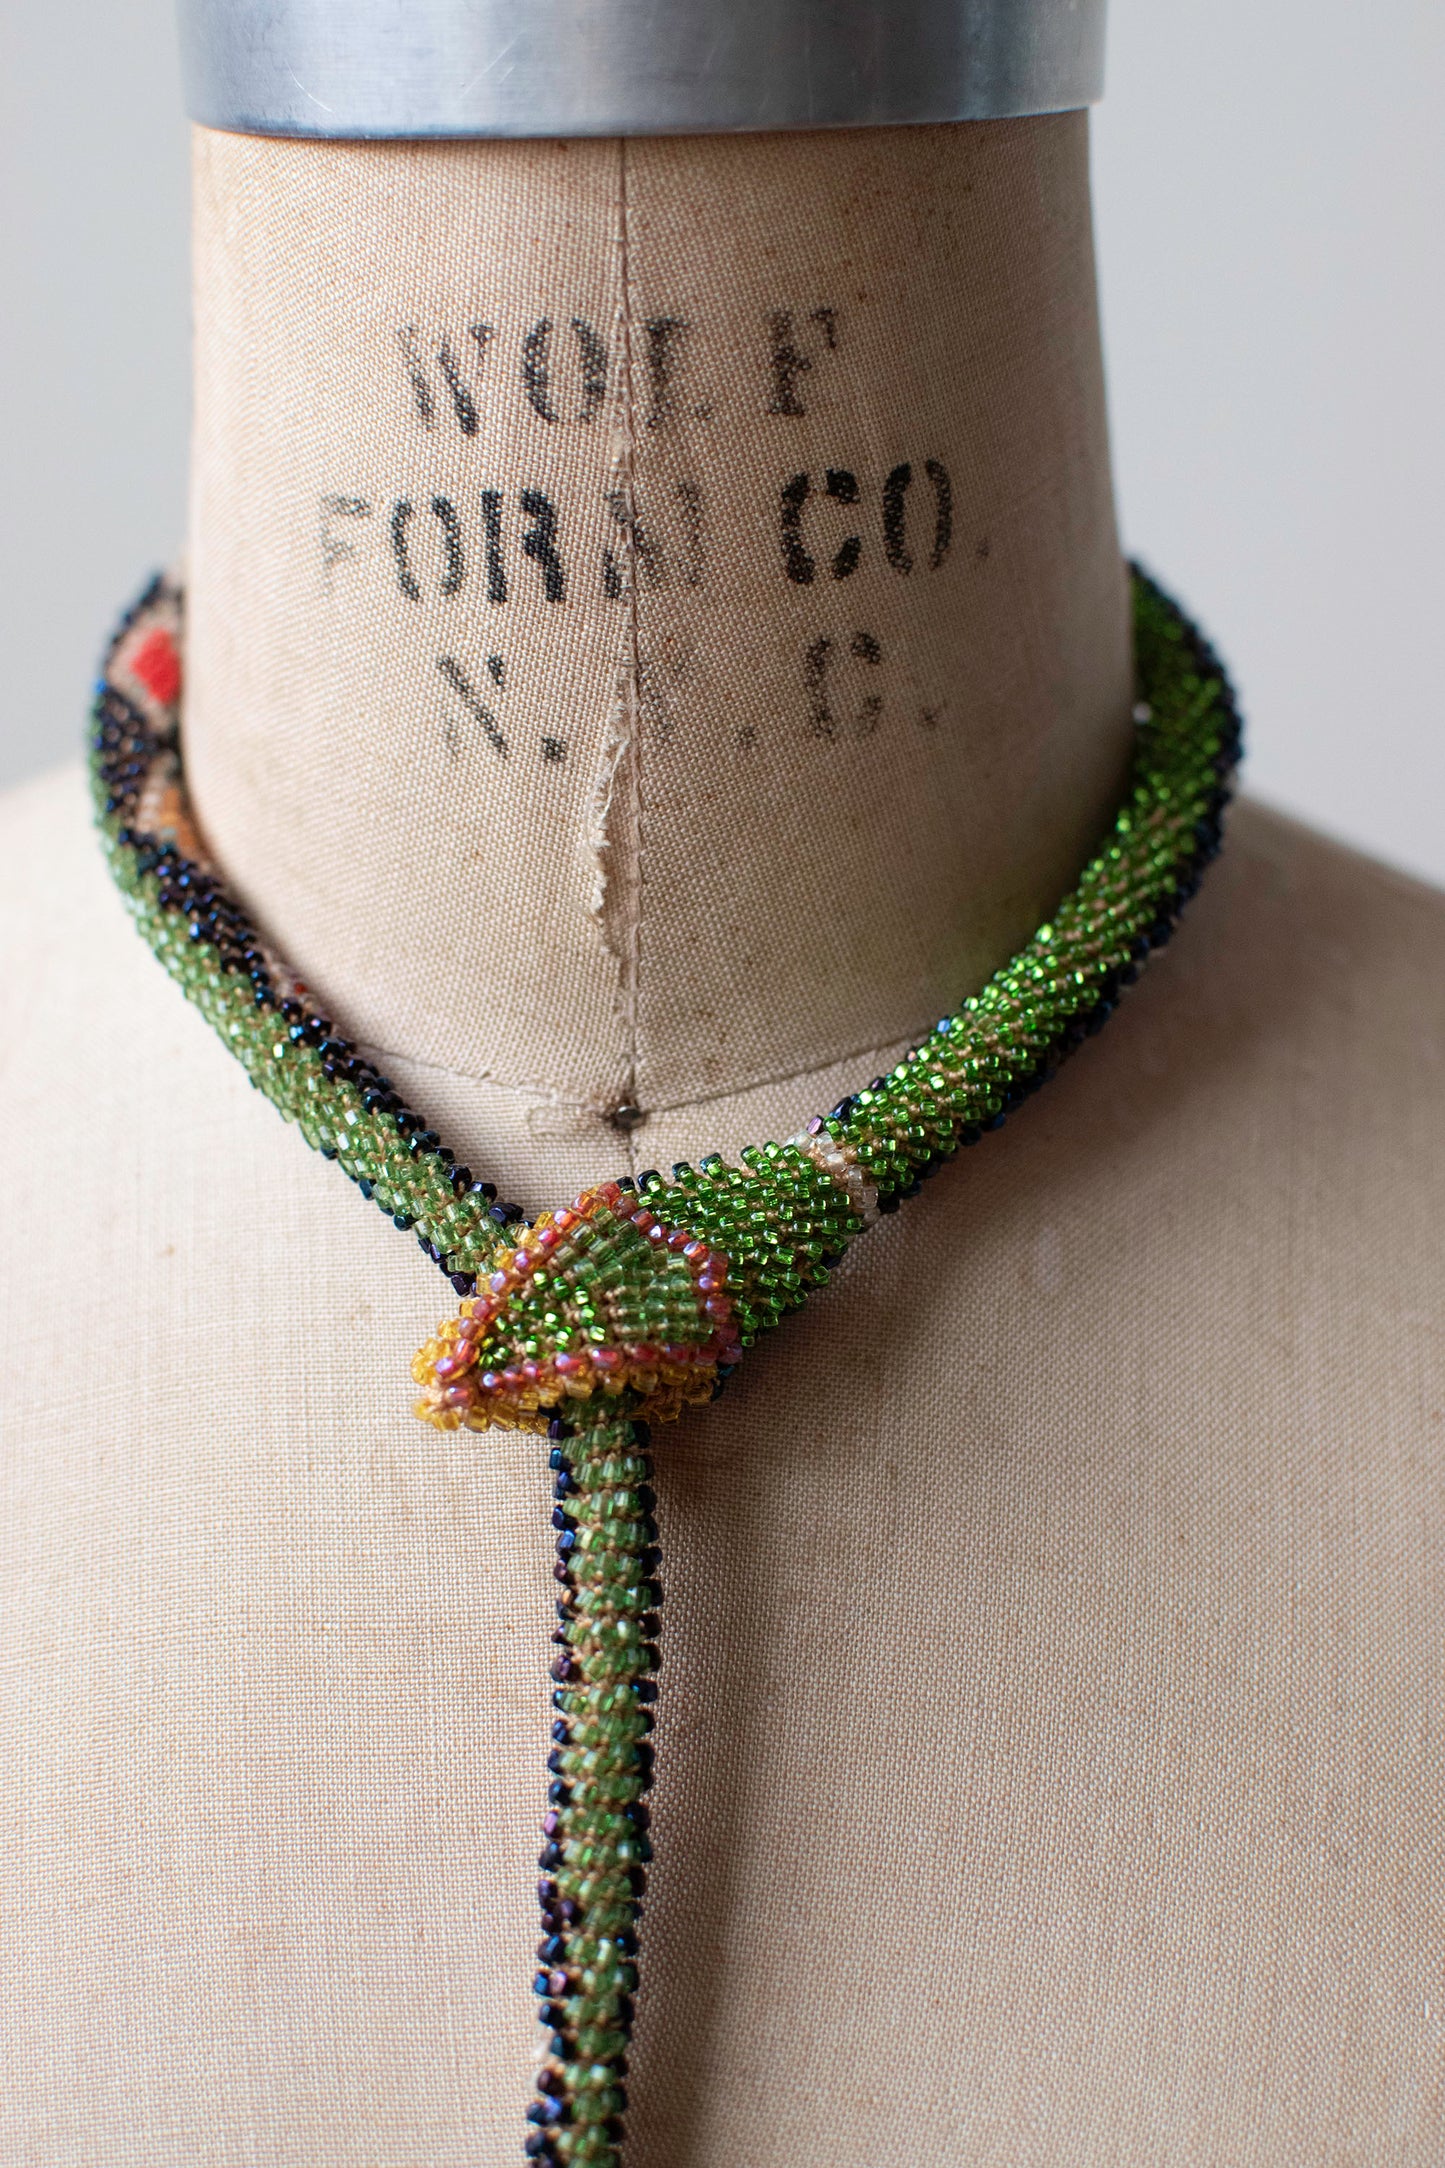 Bead Crochet Snake | Oil Slick Multi Color Diamond